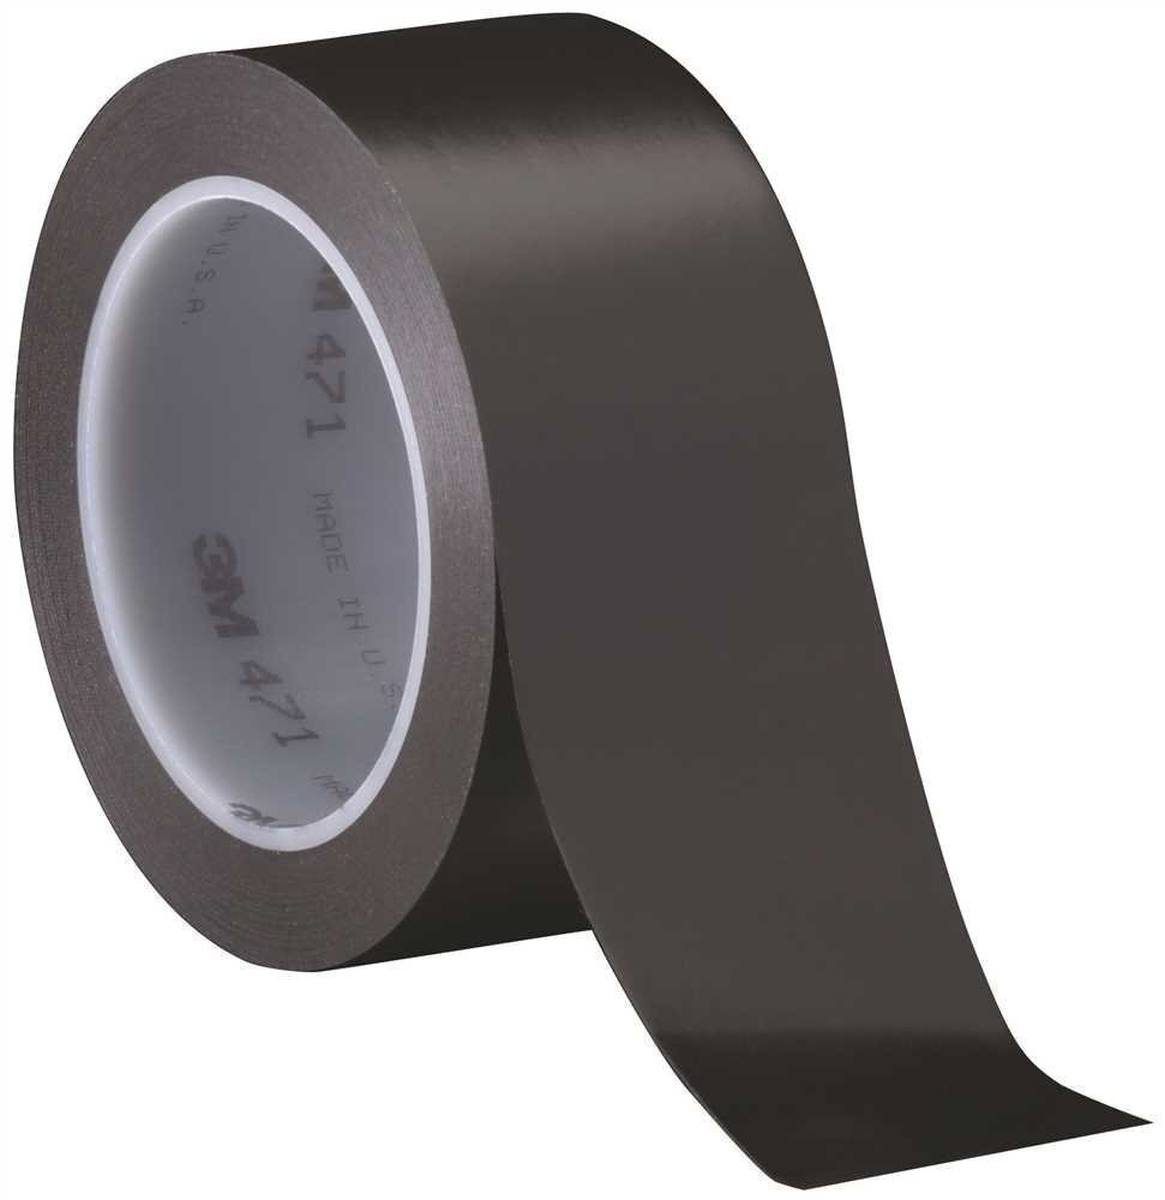 Nastro adesivo 3M in PVC morbido 471 F, nero, 15 mm x 33 m, 0,13 mm